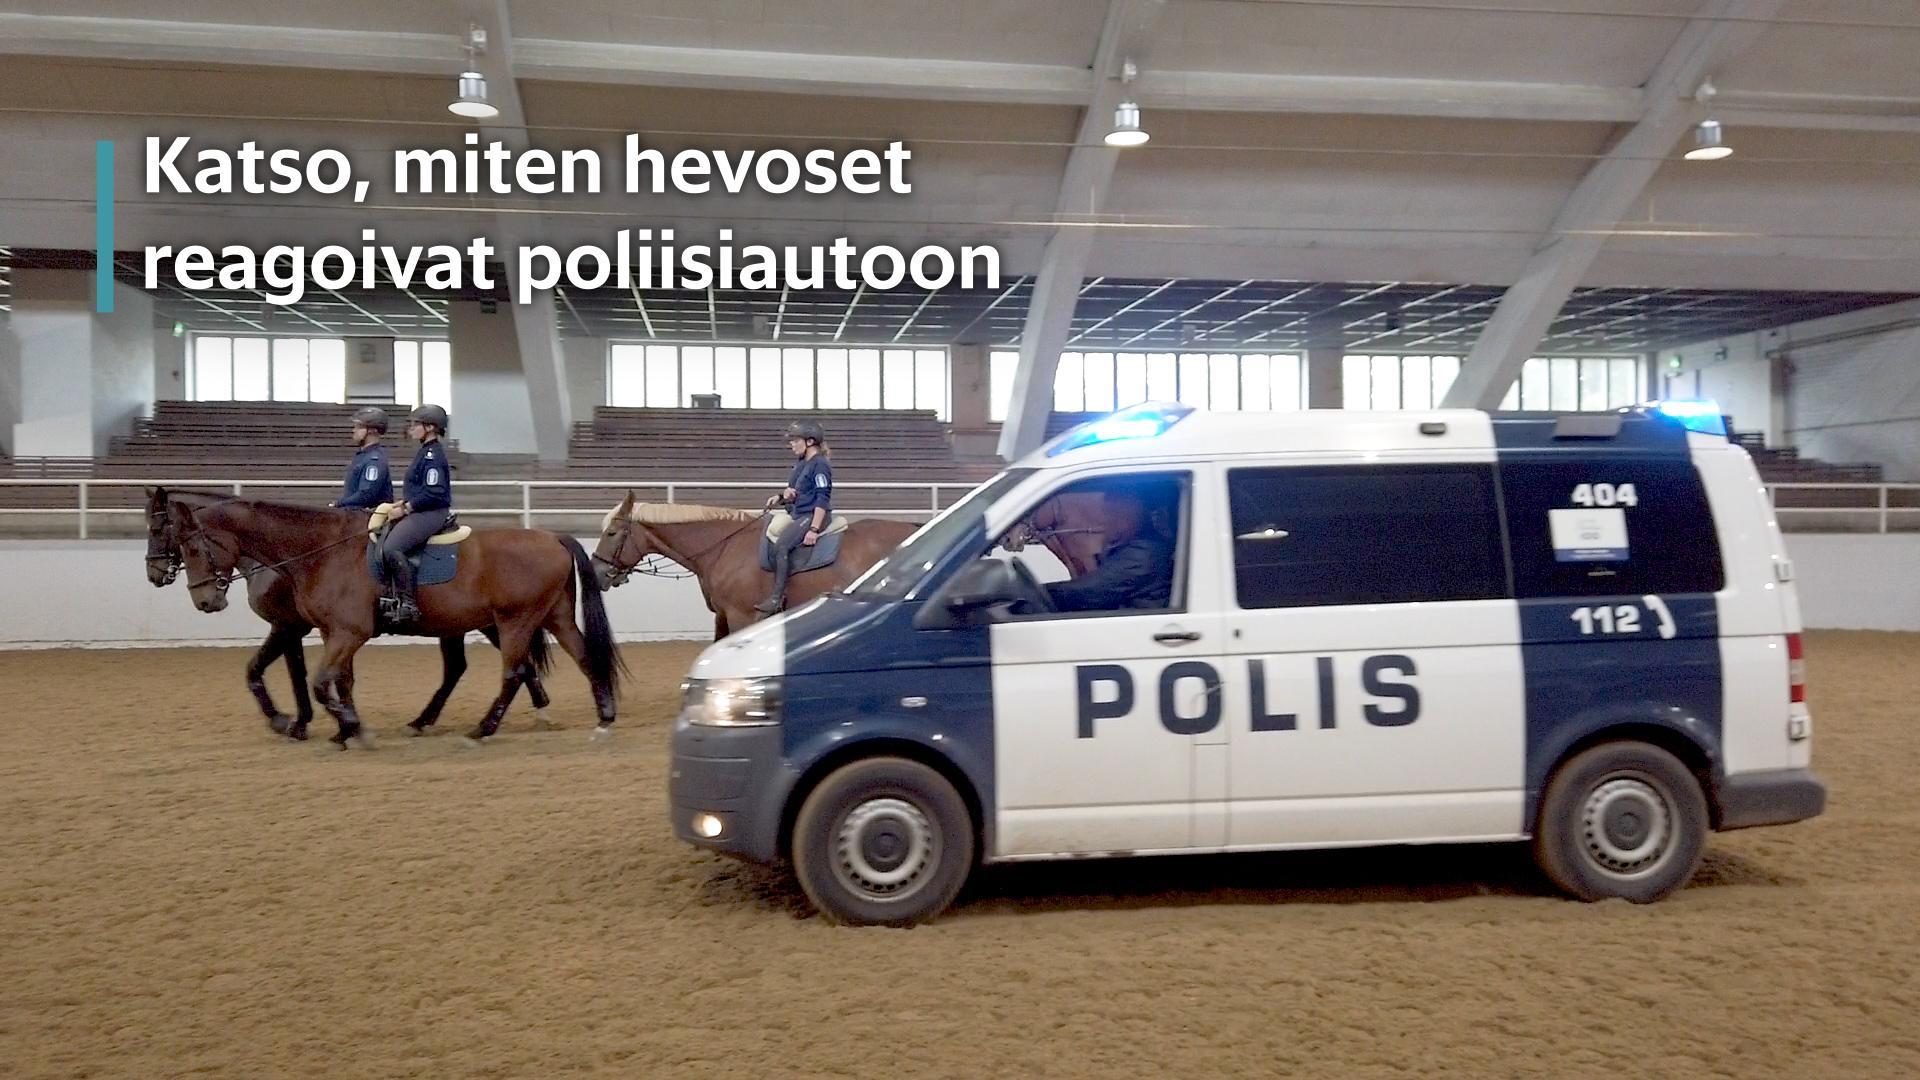 Katso, miten hevoset reagoivat poliisiautoon